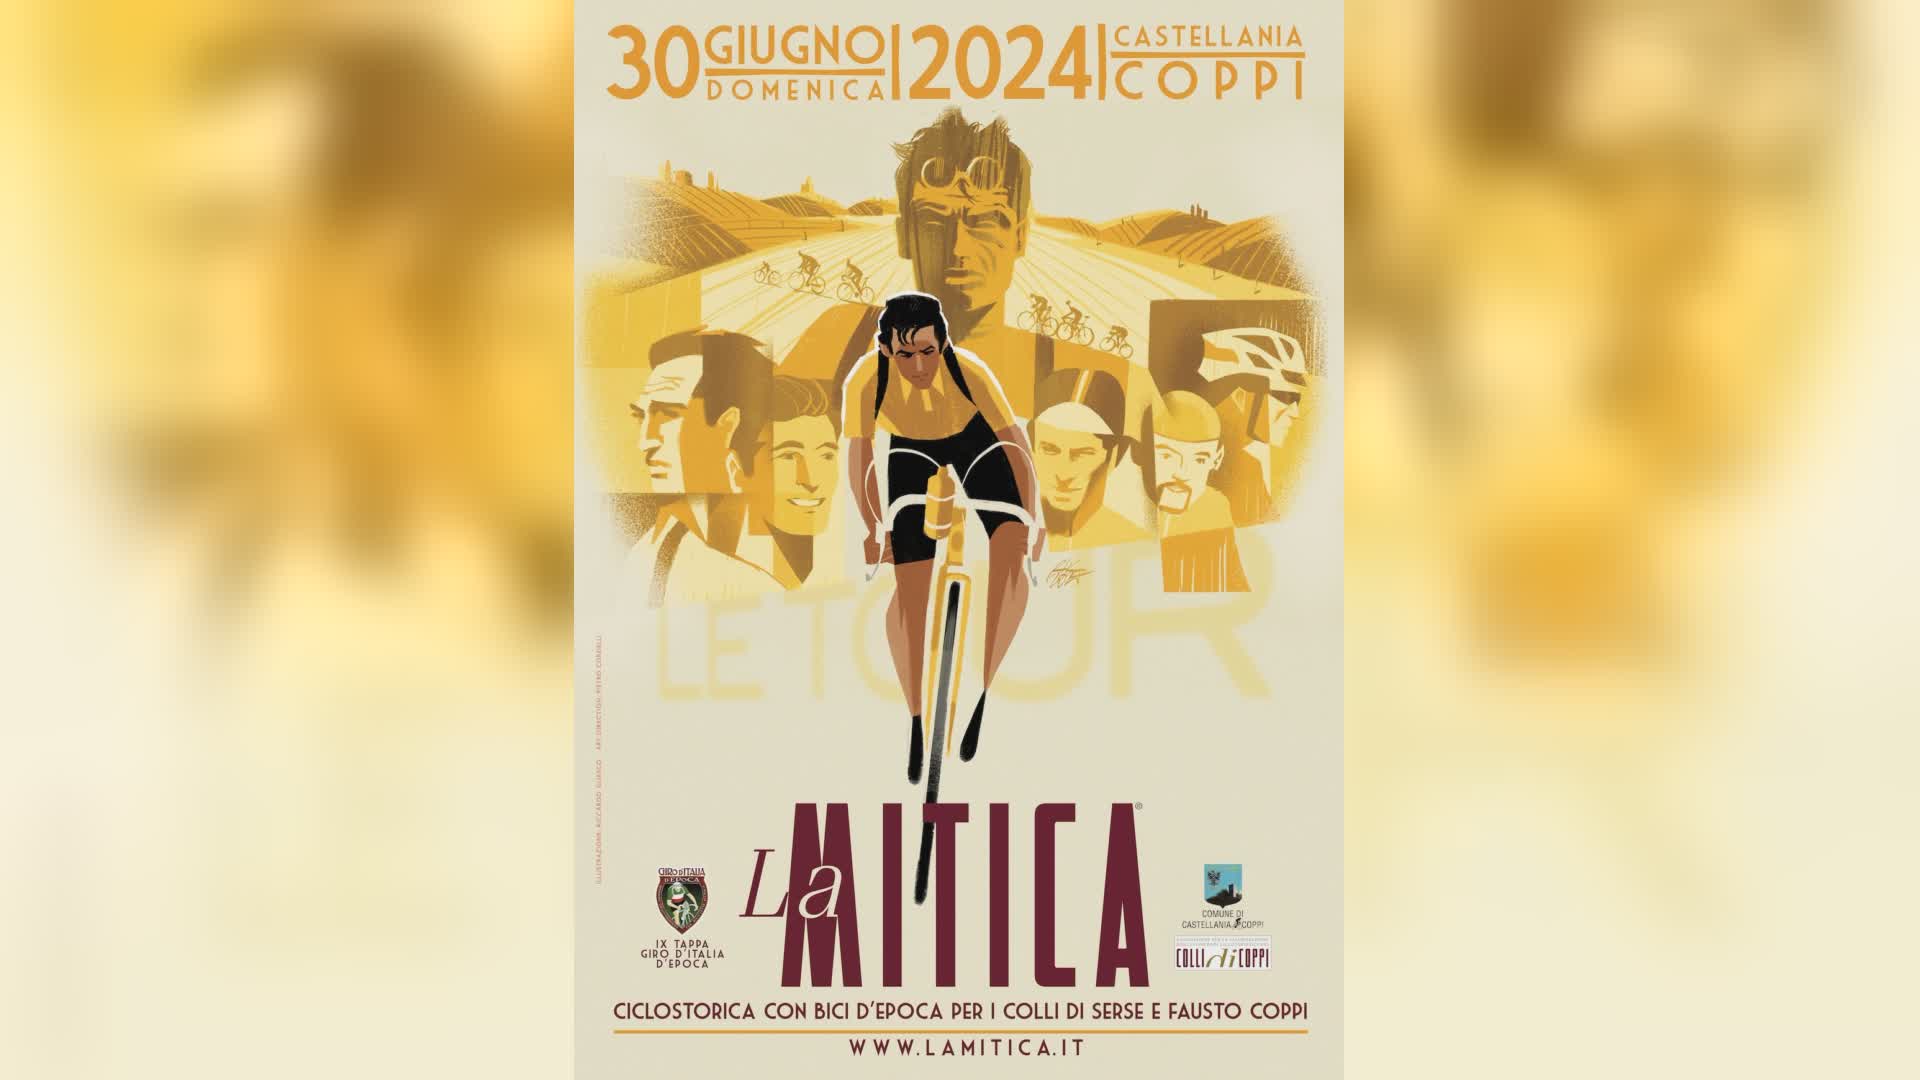 Ciclismo: il 30 giugno a Castellania la "Mitica", cicloturistica in bici d'epoca per omaggiare il passaggio del Tour nelle terre di Coppi